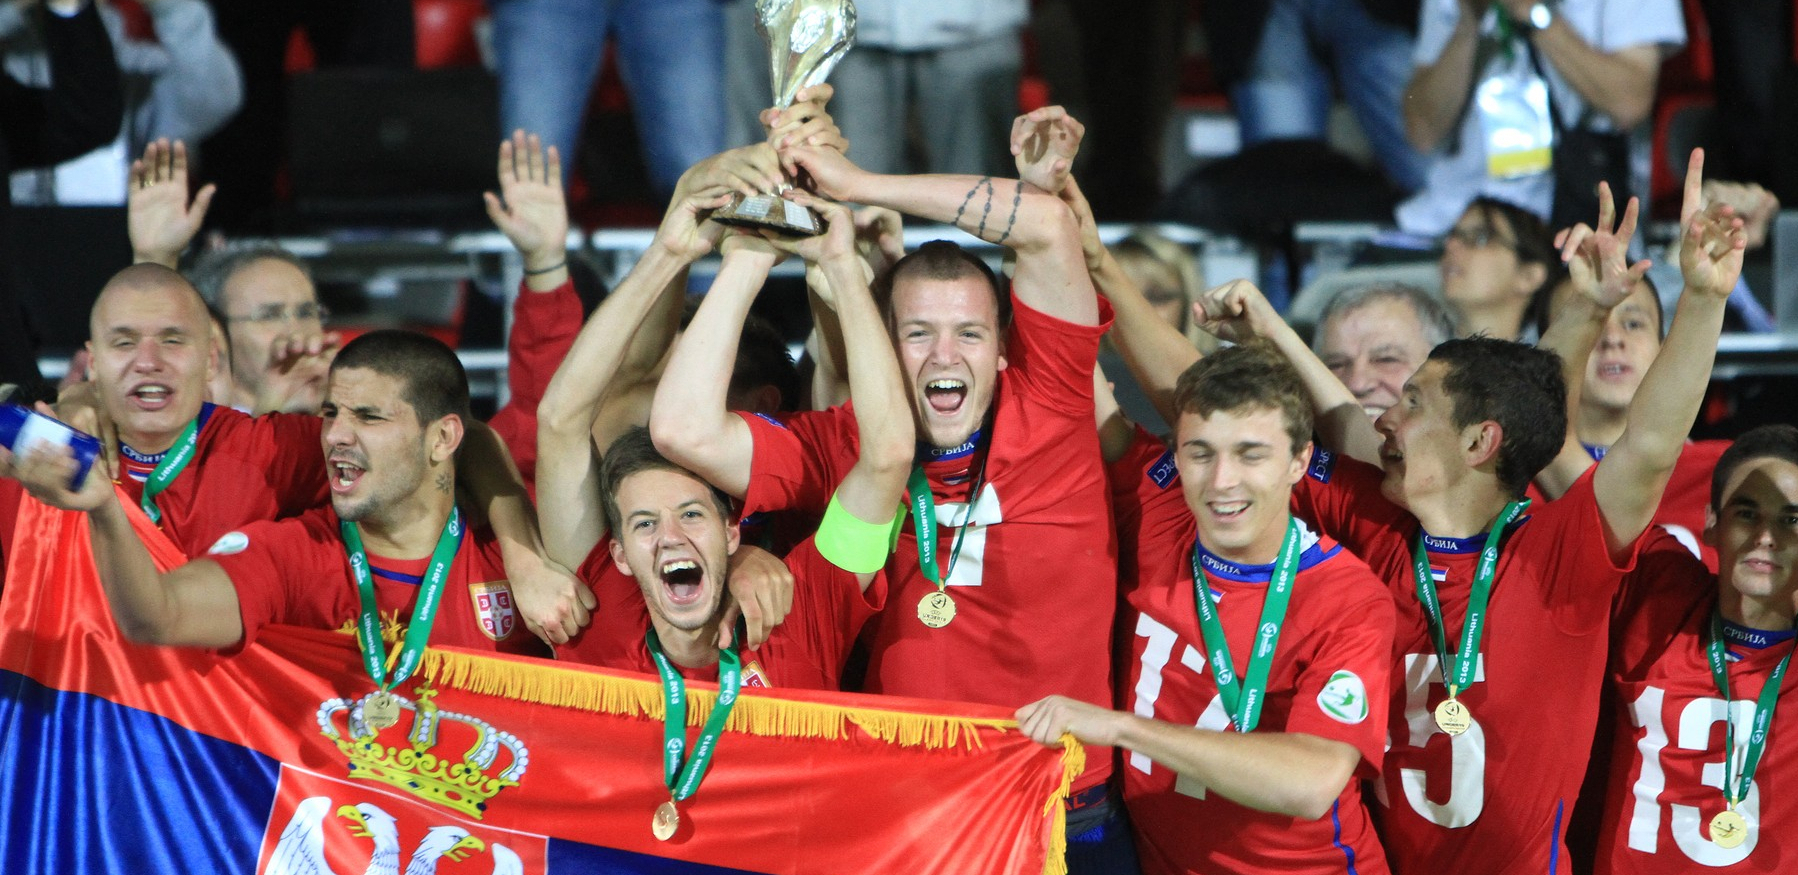 VRATIO SE NA BALKAN Osvojio Evropsko prvenstvo sa Srbijom, igrao u Portu, a sada će igrati u Crnoj Gori